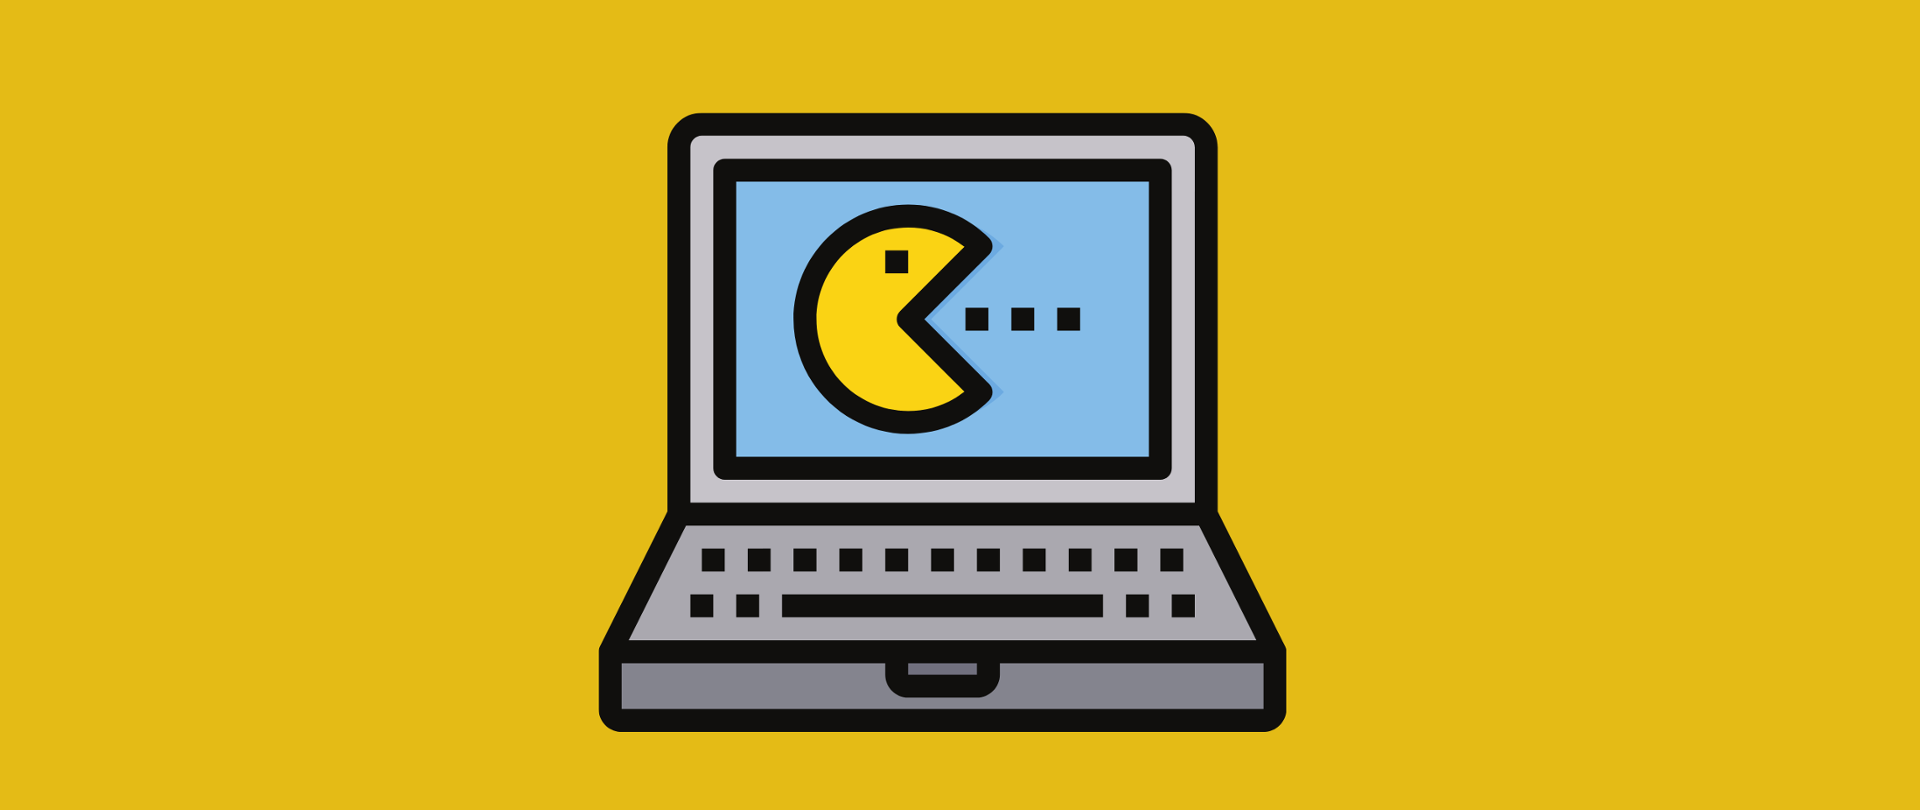 Grafika wektorowa - żółte tło, a na nim szary laptop. Na ekranie komputera widoczna żółta ikonka gry packman.